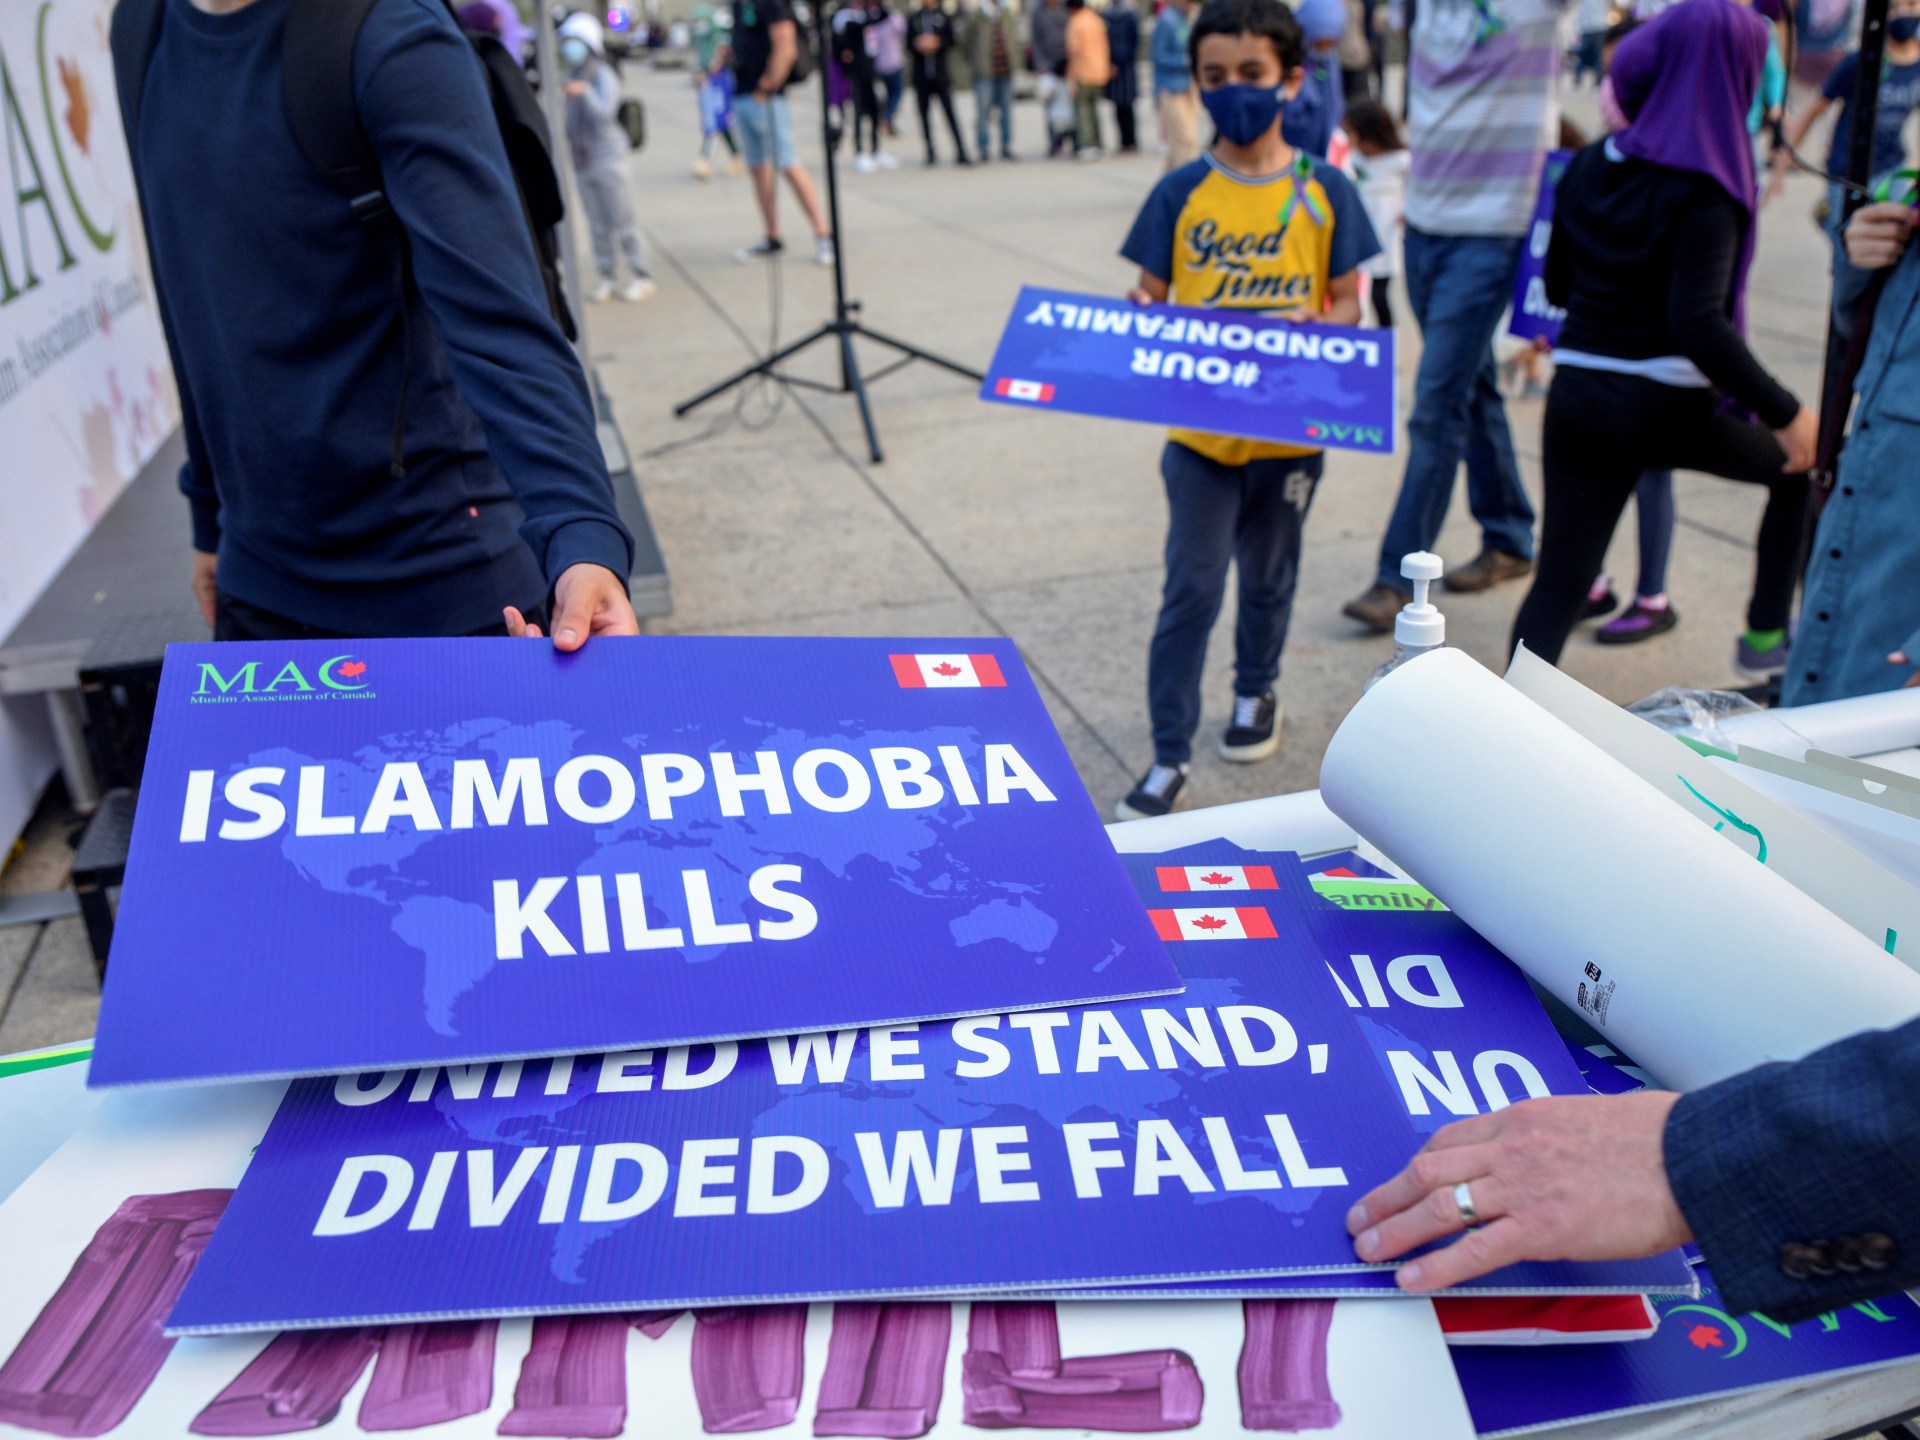 Pemimpin Muslim meningkatkan kewaspadaan setelah ‘insiden kebencian’ di masjid Kanada |  Berita Islamofobia